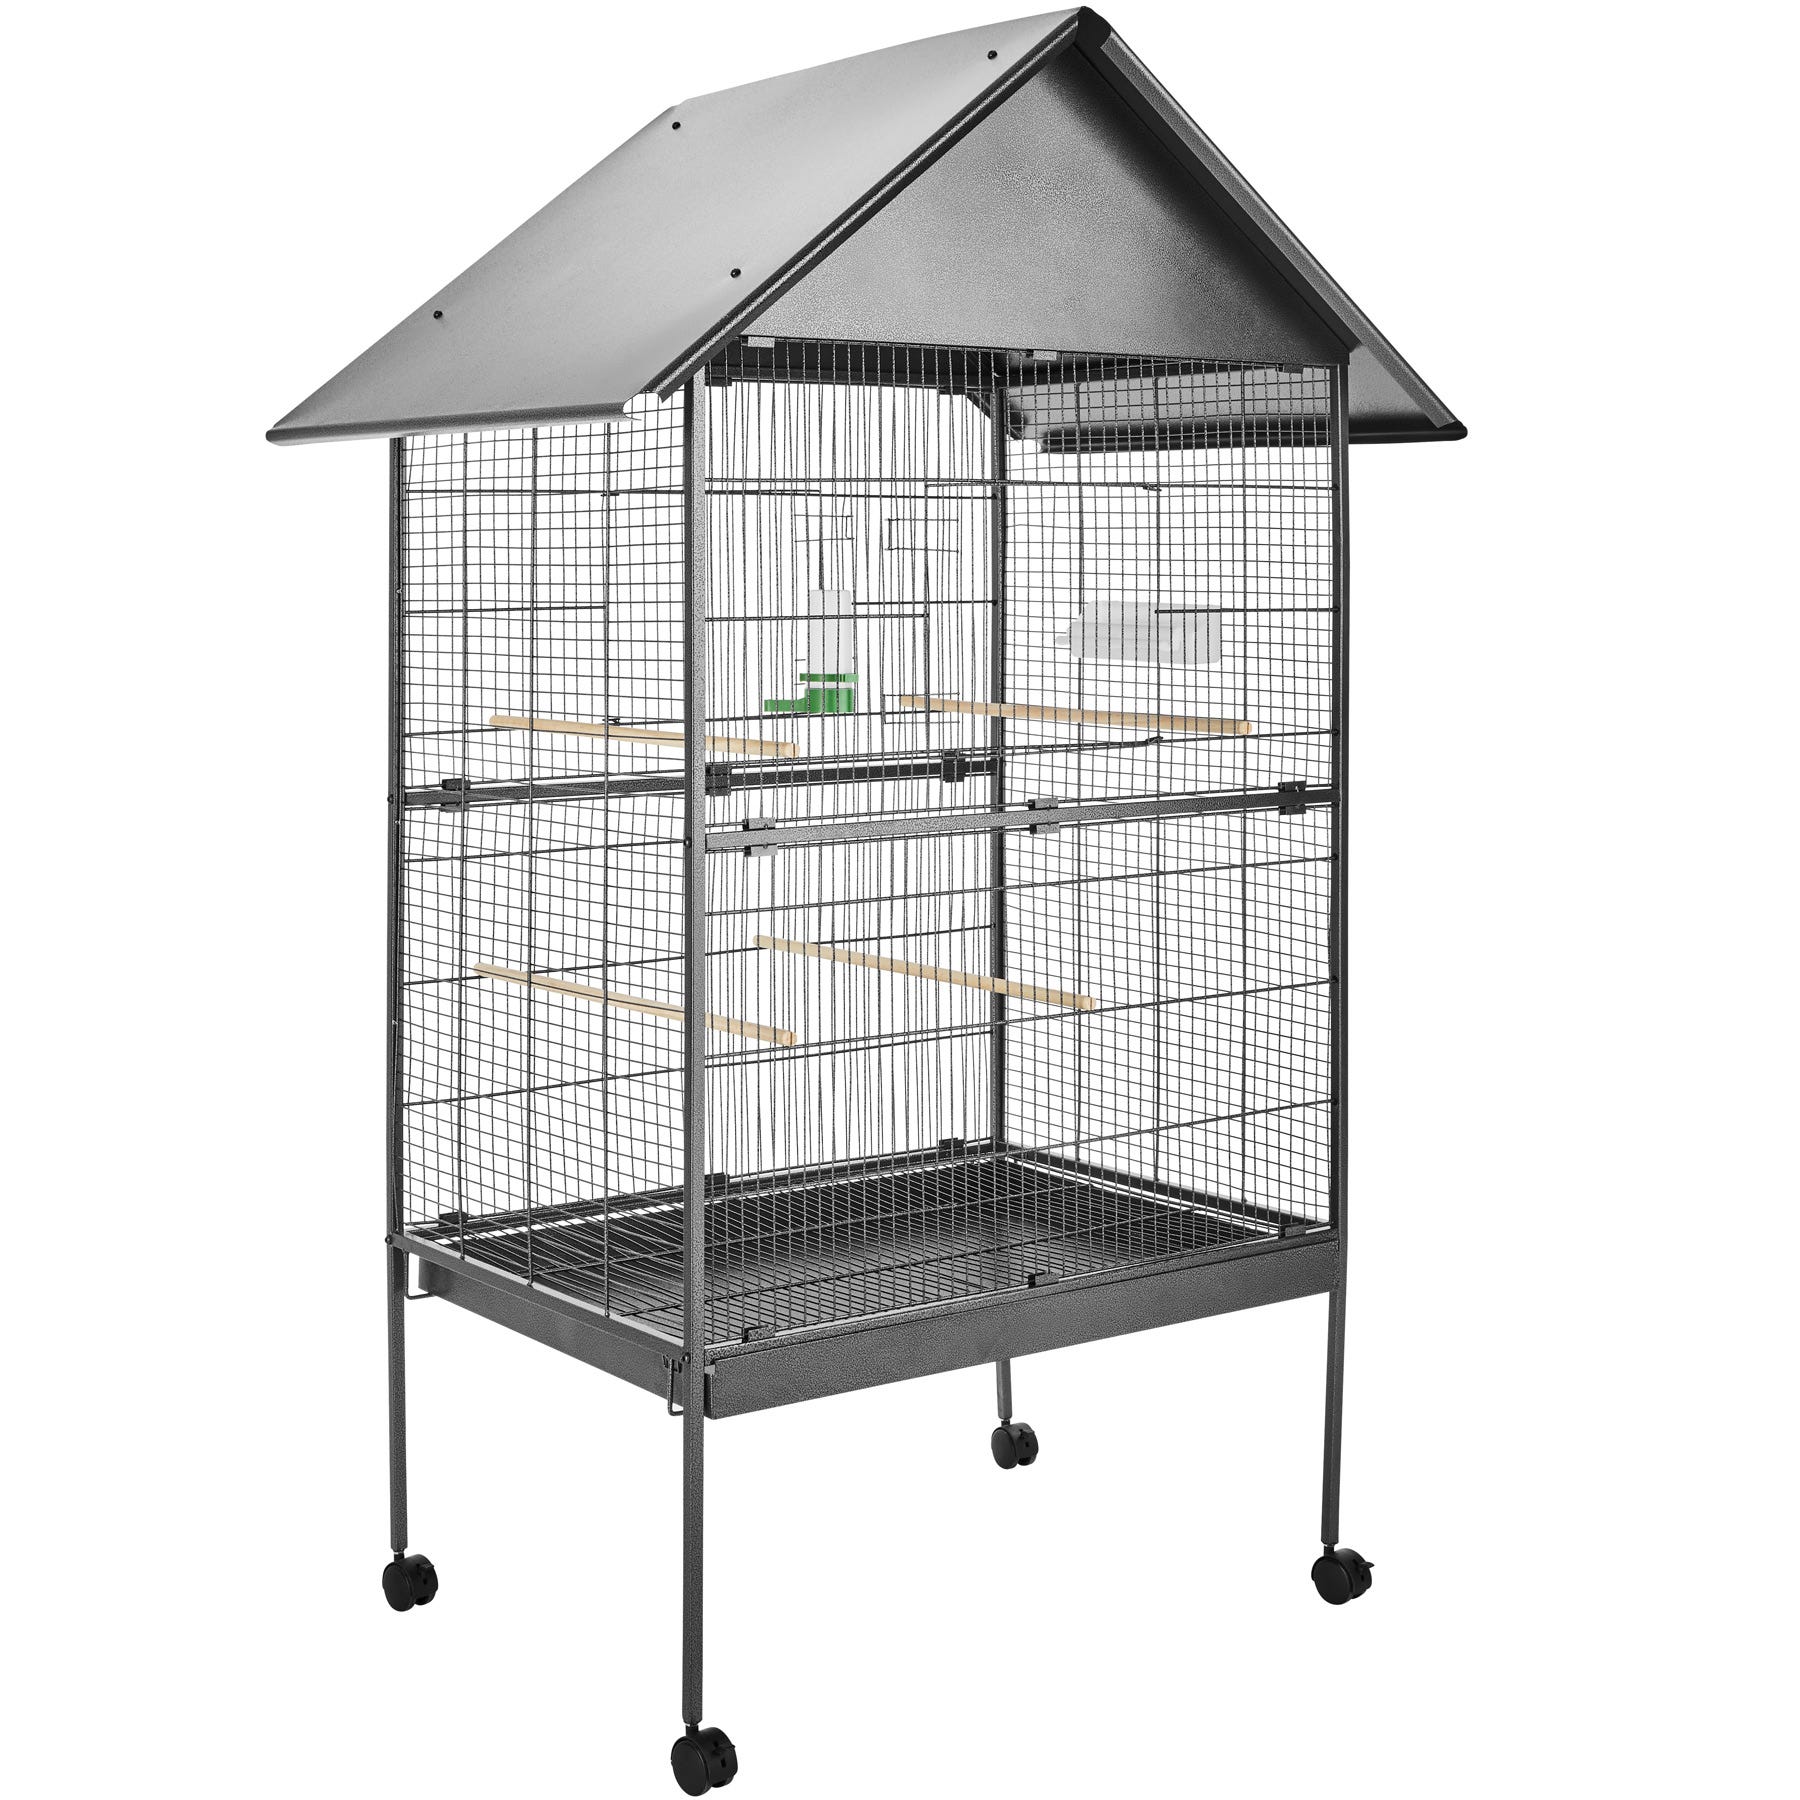 Abreuvoir mangeoire design pour cage oiseaux - Petits Compagnons